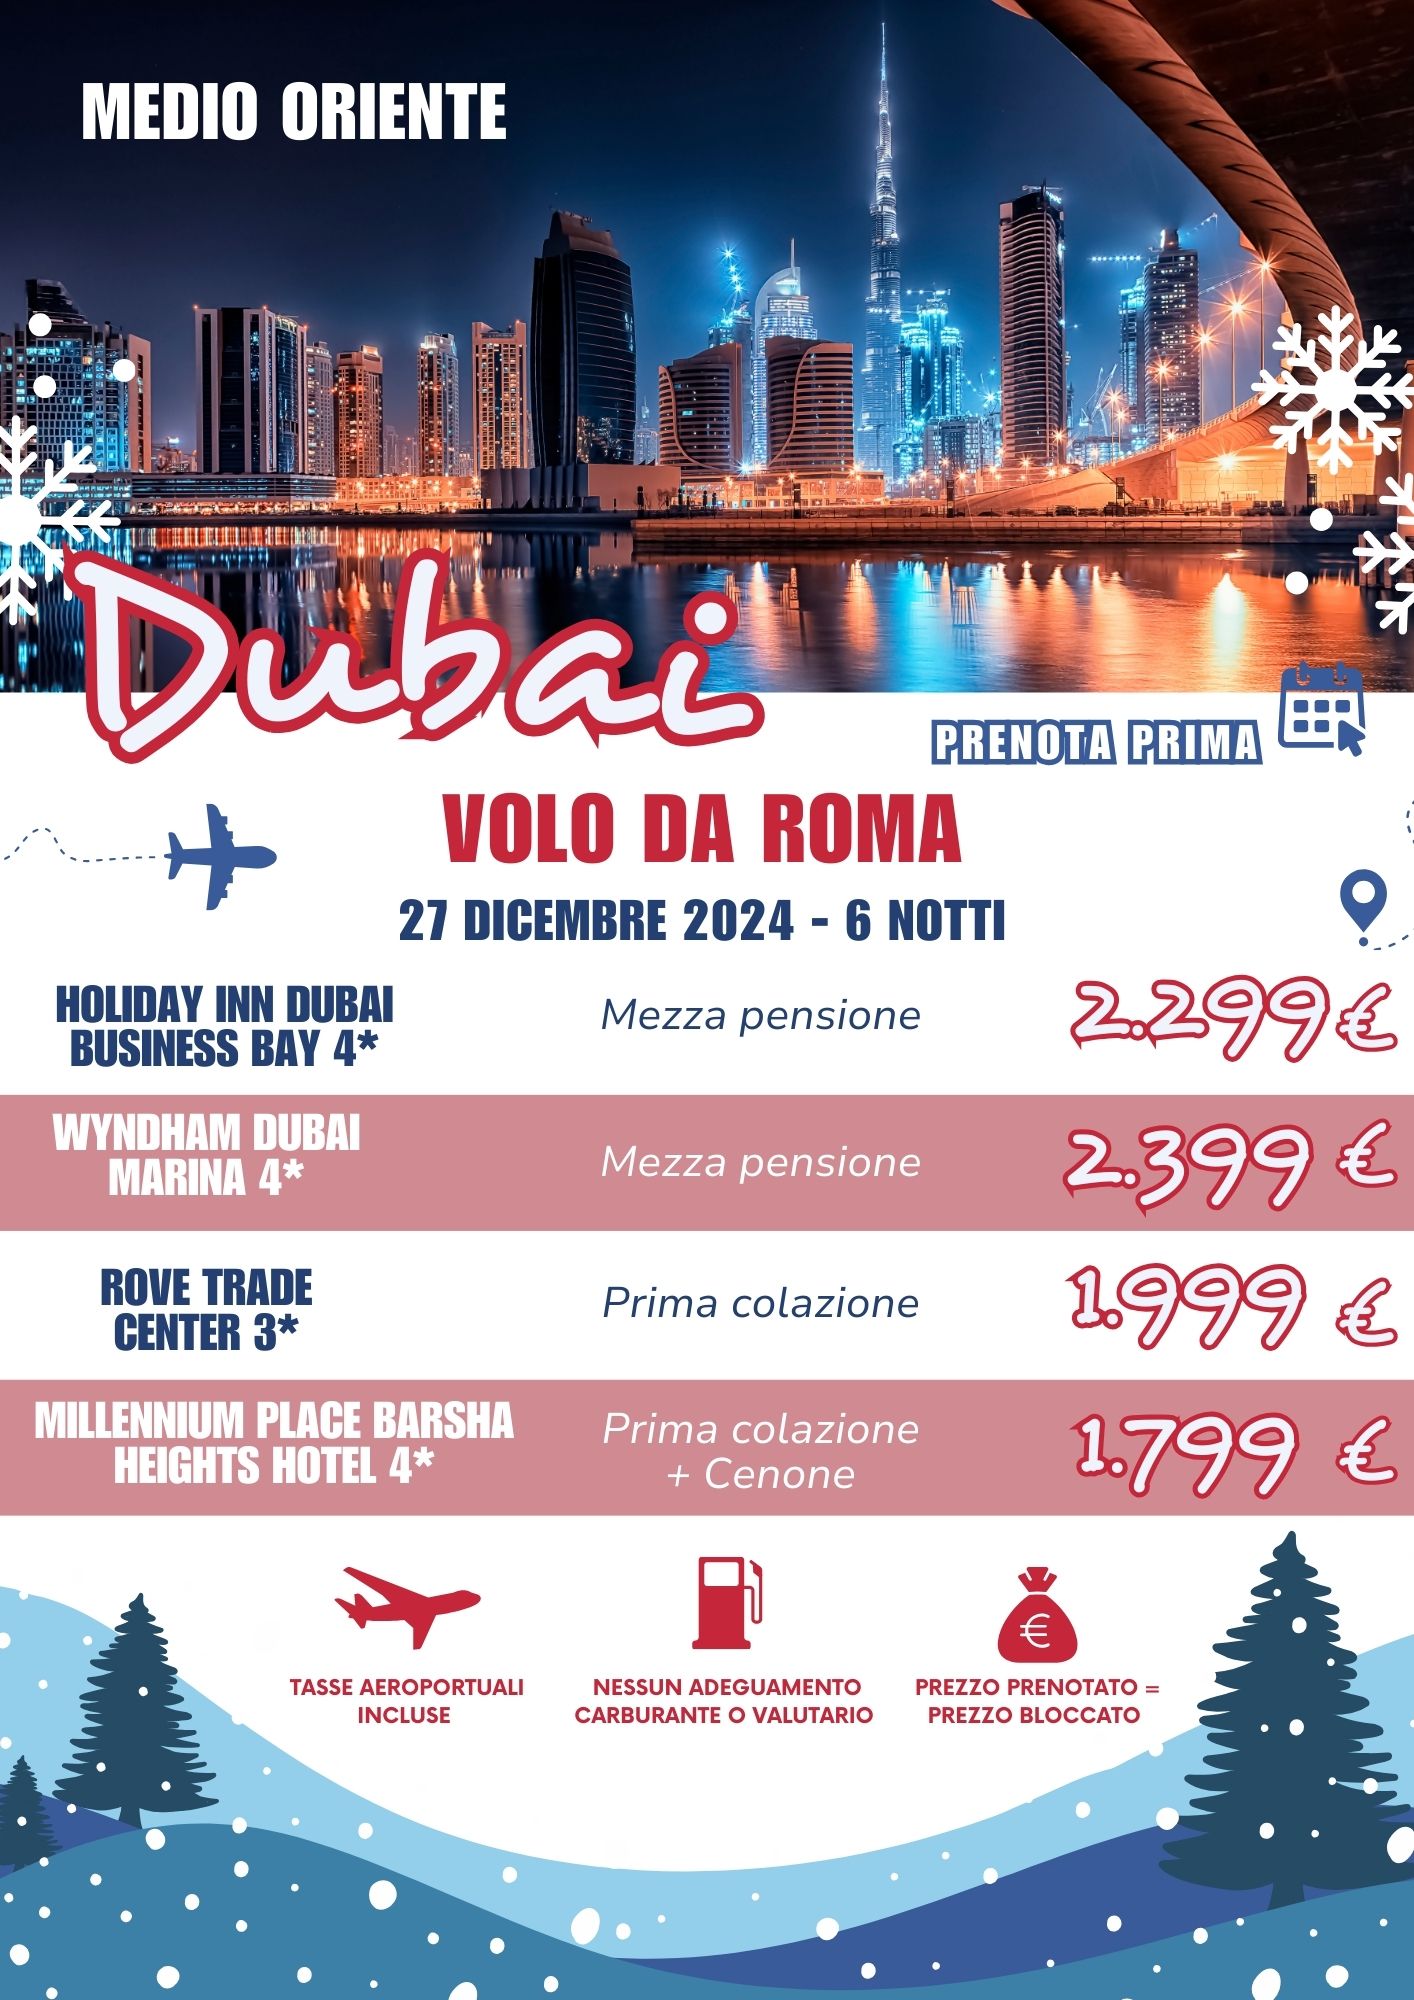 TEOREMA WINTER 2025 - DUBAI DA ROMA